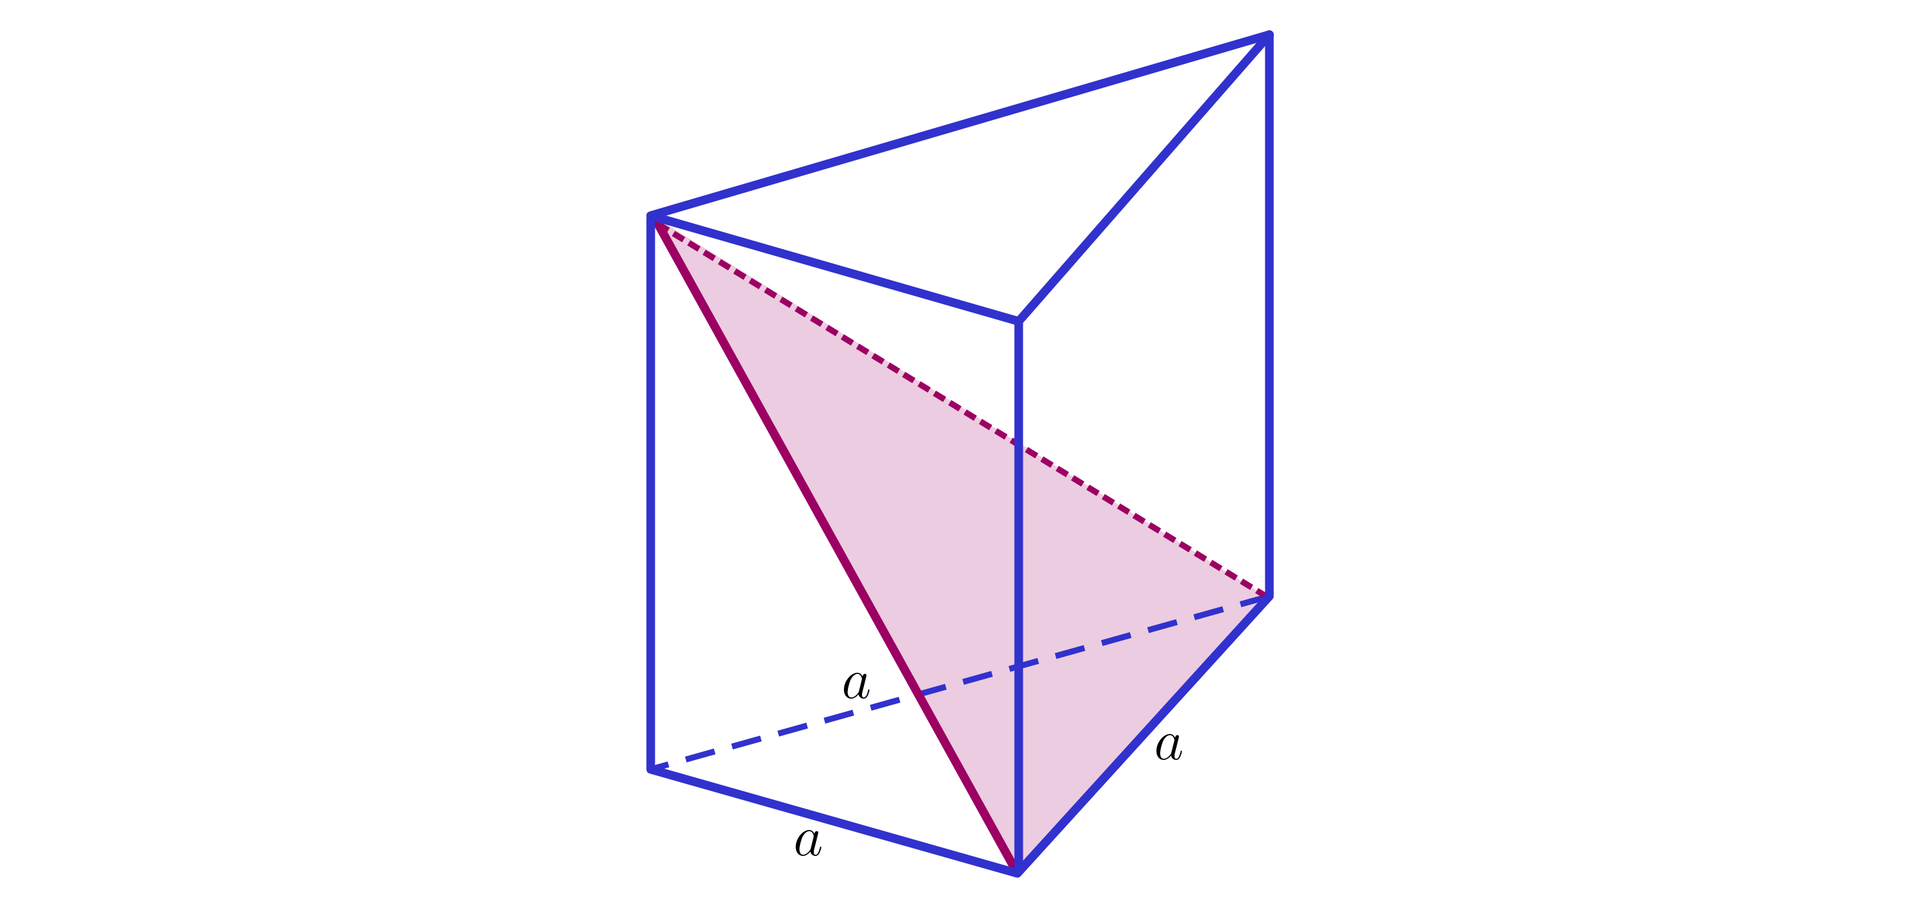 Ilustracja przedstawia graniastosłup prawidłowy trójkątny. Z górnego wierzchołka bryły poprowadzono przekątną dwóch sąsiednich ścian bocznych. Powstał trójkąt równoramienny wewnątrz bryły. Zaznaczono krawędź podstawy o długości a. 